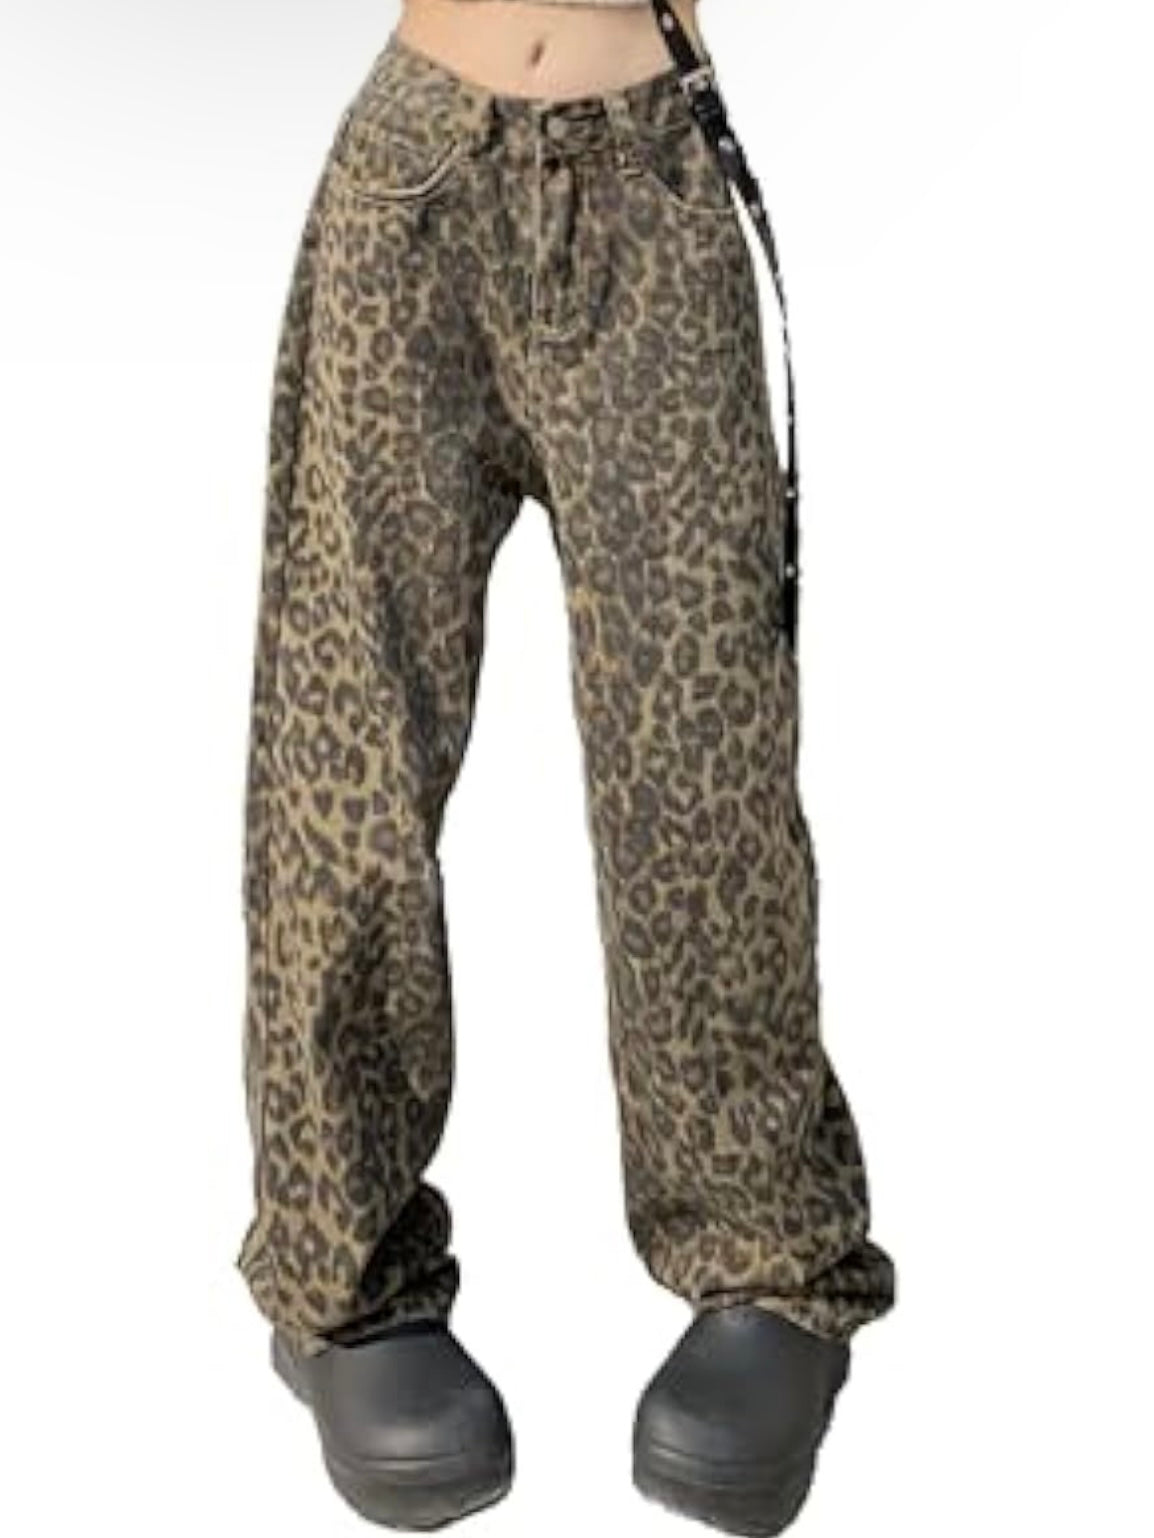 Leopard print jeans wide leg pants